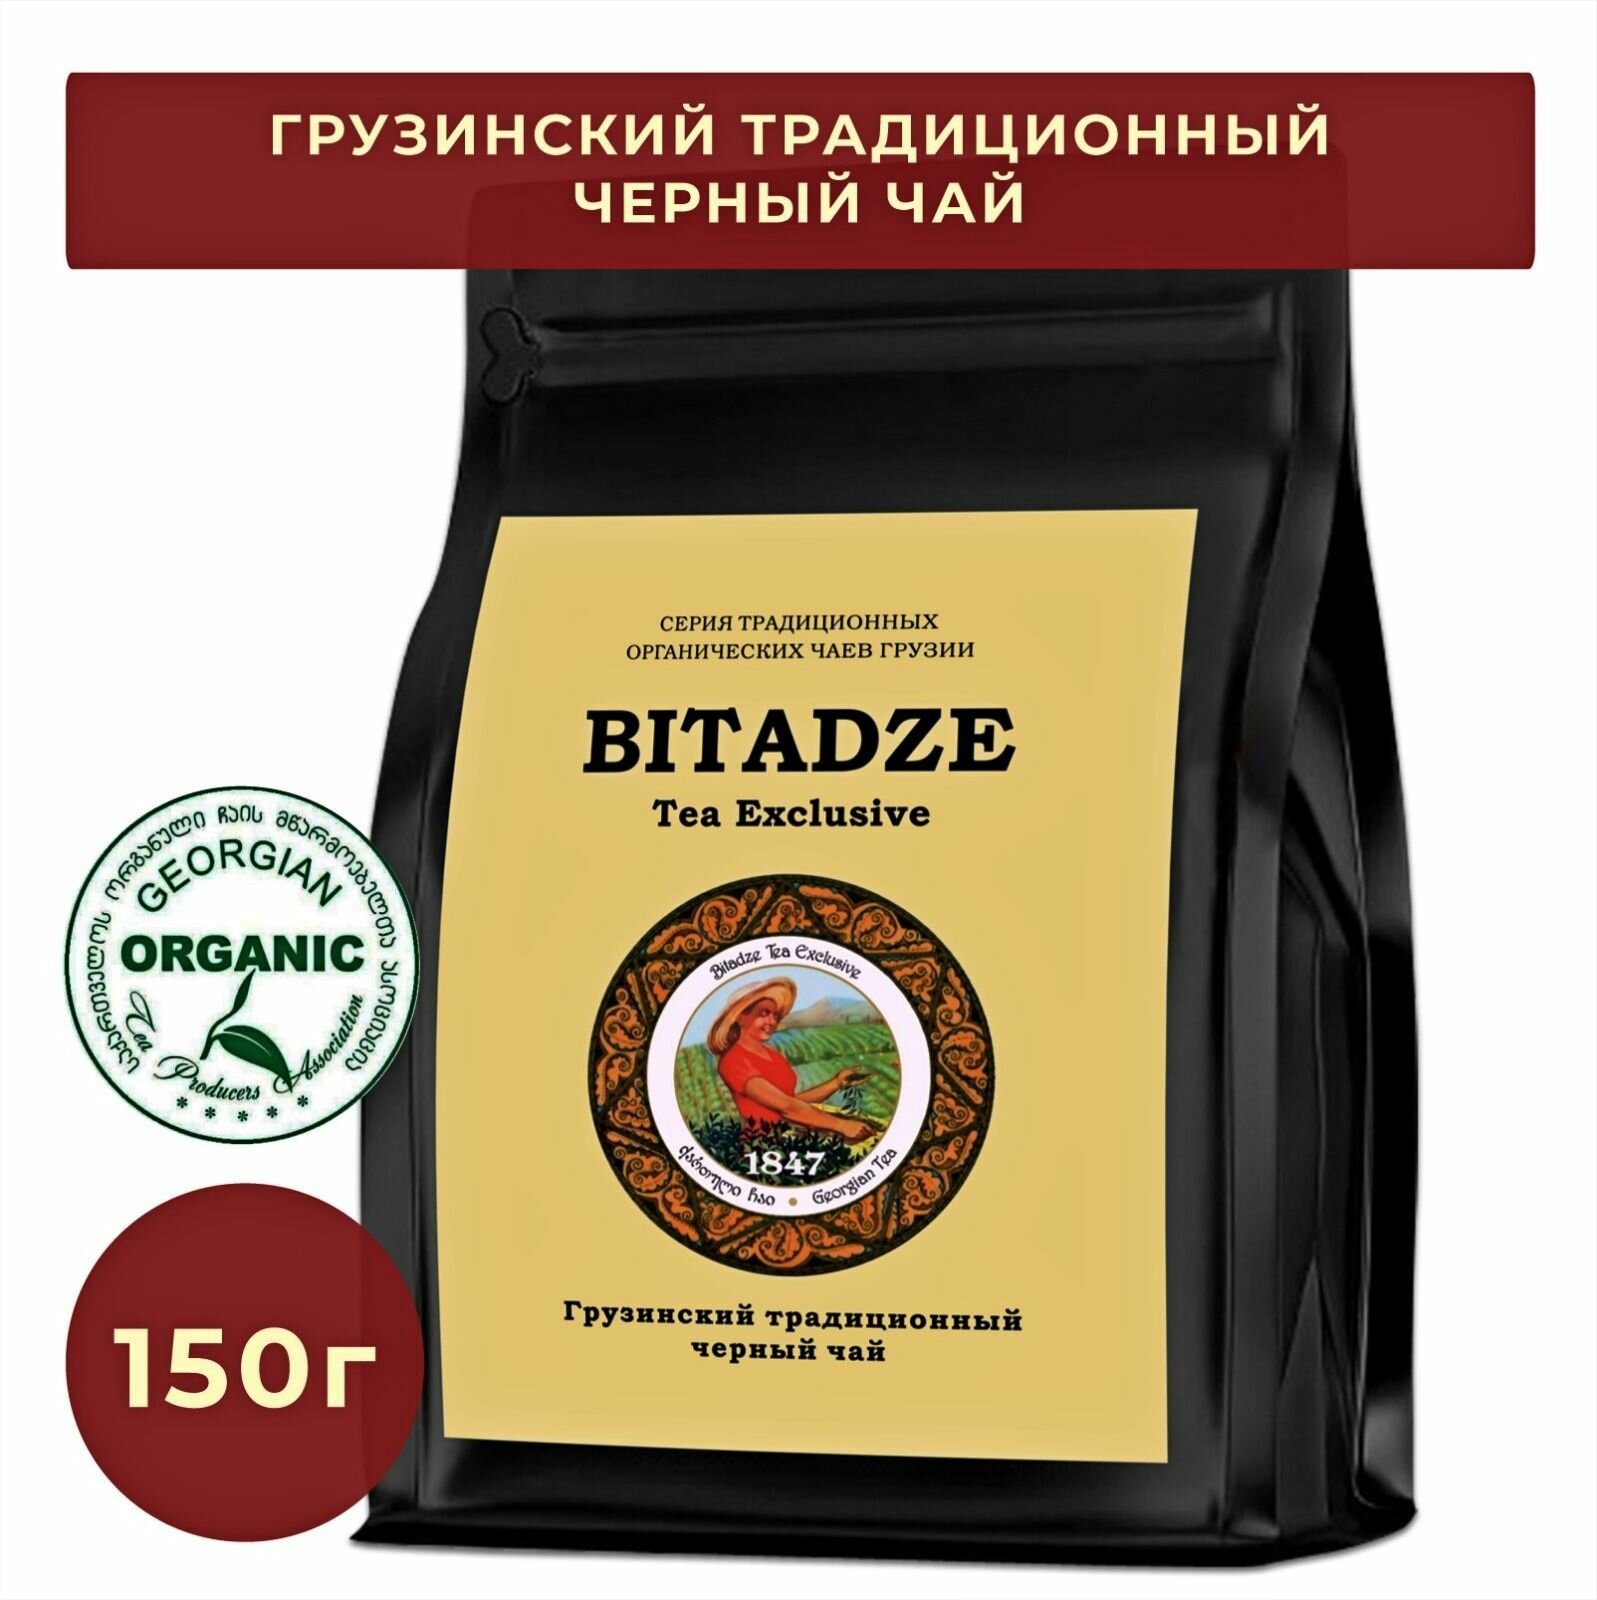 Грузинский чёрный чай Bitadze фермерский традиционный, organic,150 г